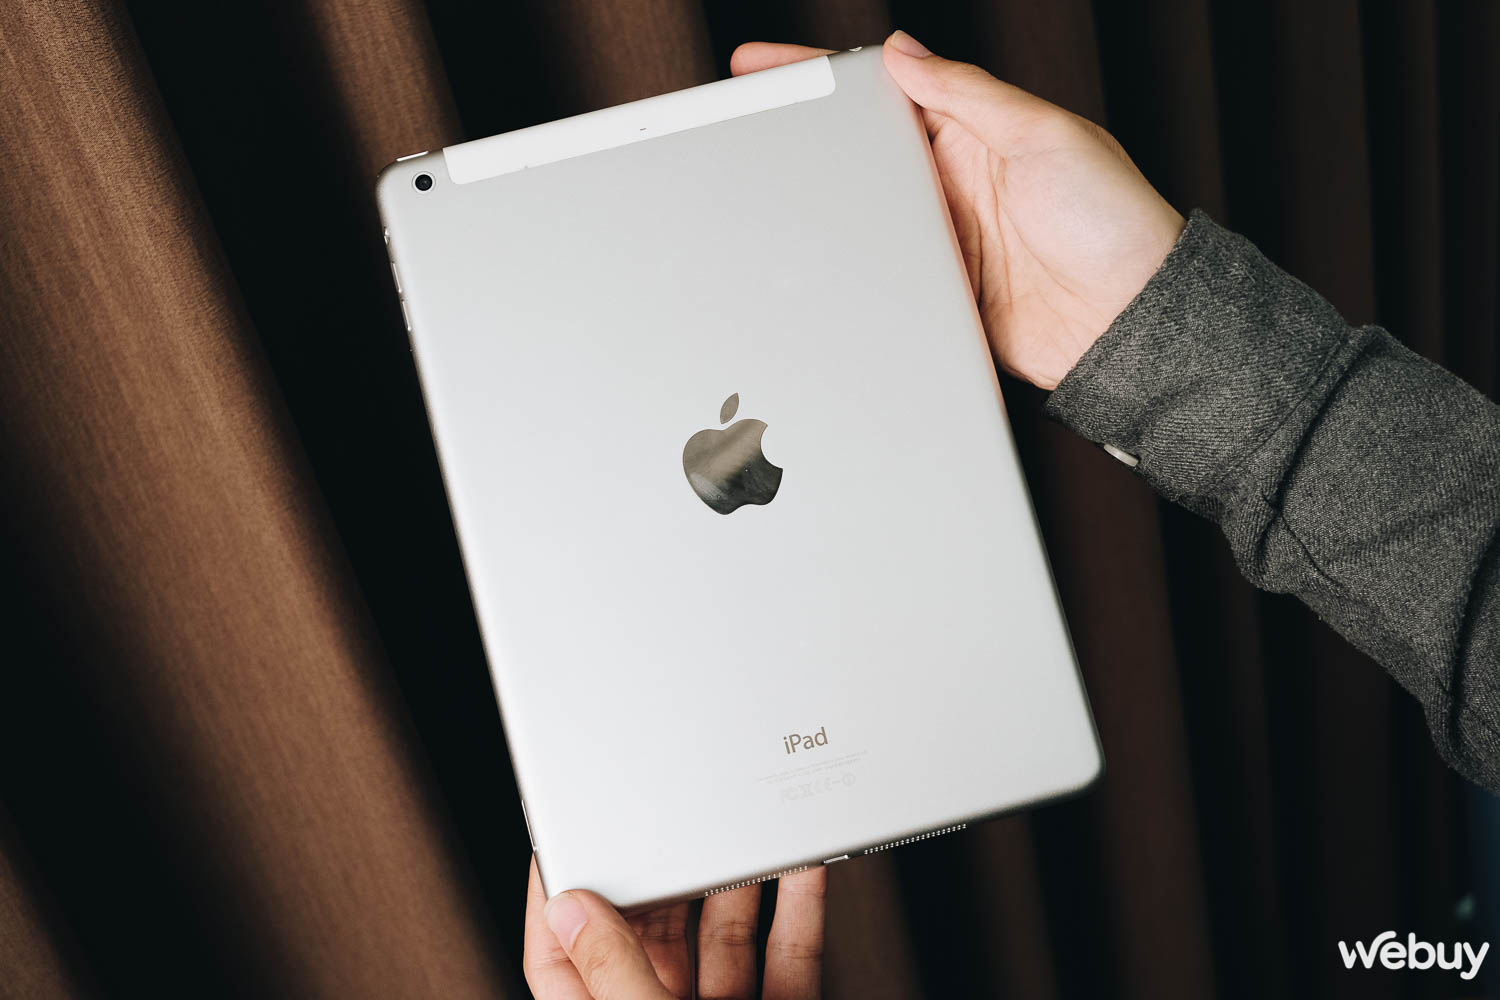 Đây là mẫu iPad rẻ nhất mà vẫn còn sử dụng được, giá chỉ hơn 2 triệu đồng - Ảnh 4.